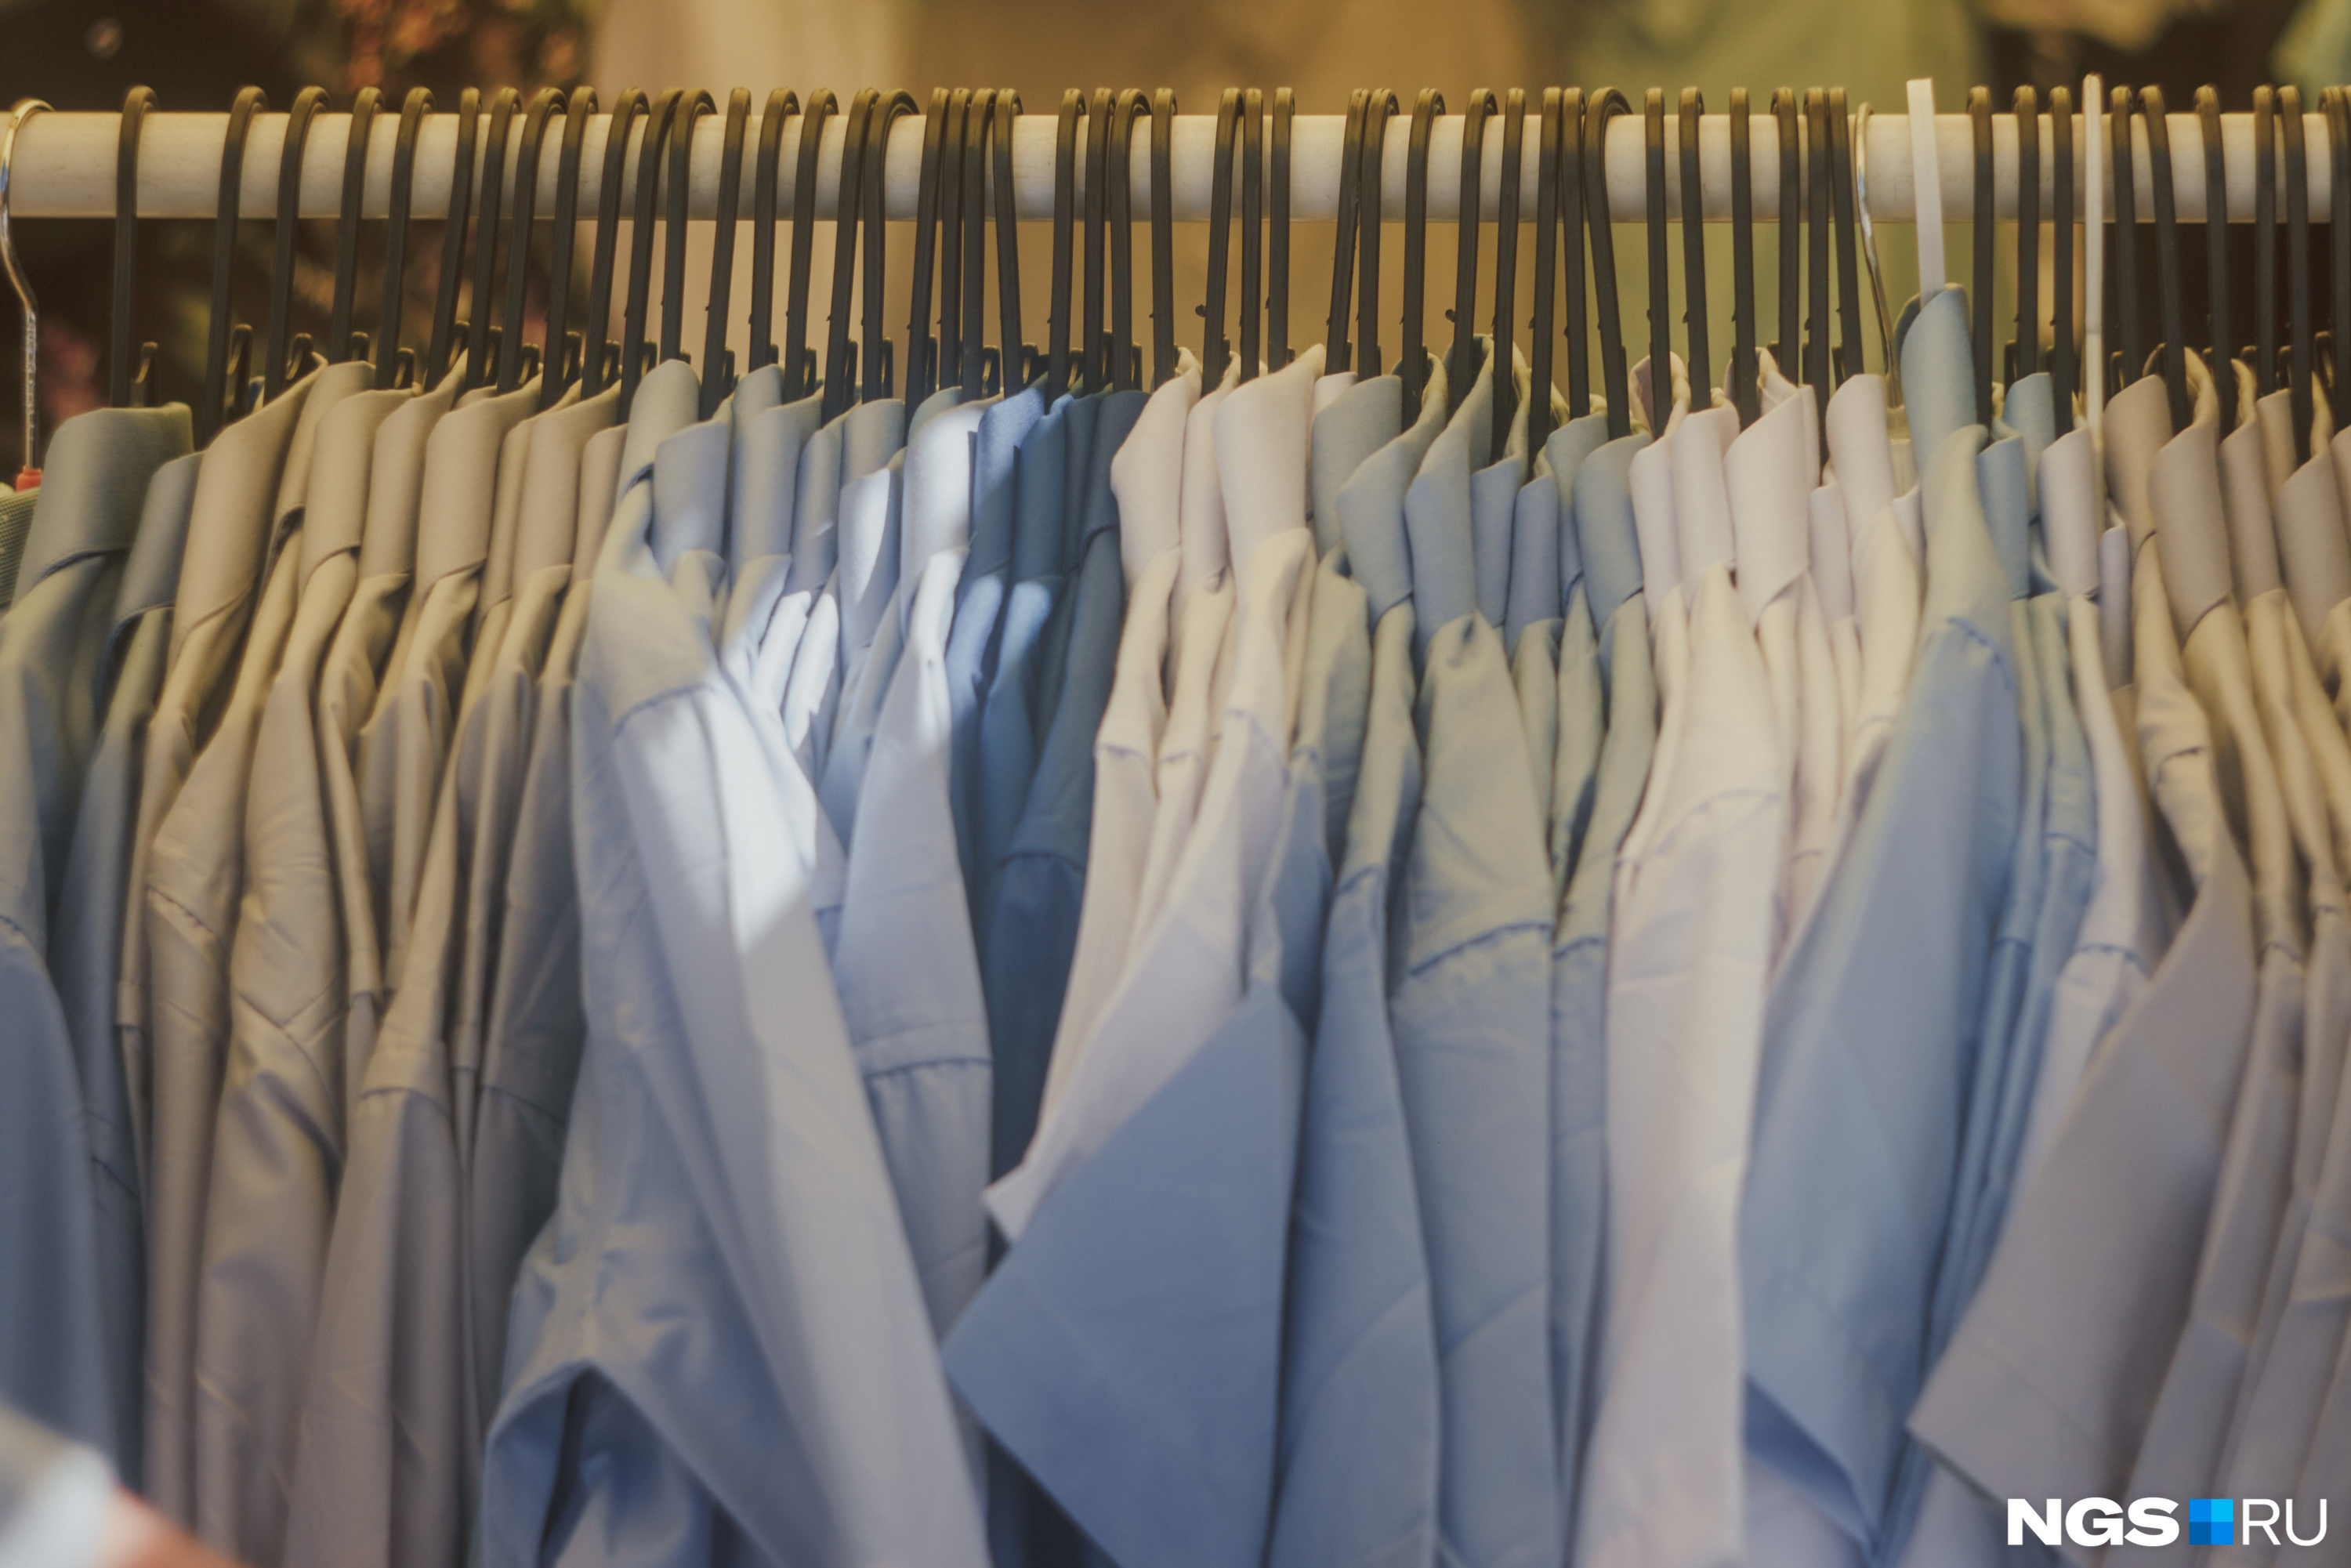 На вешалках можно найти рубашки разных расцветок — от тёмно-синего до серого. Но родители всё равно предпочитают белую классику